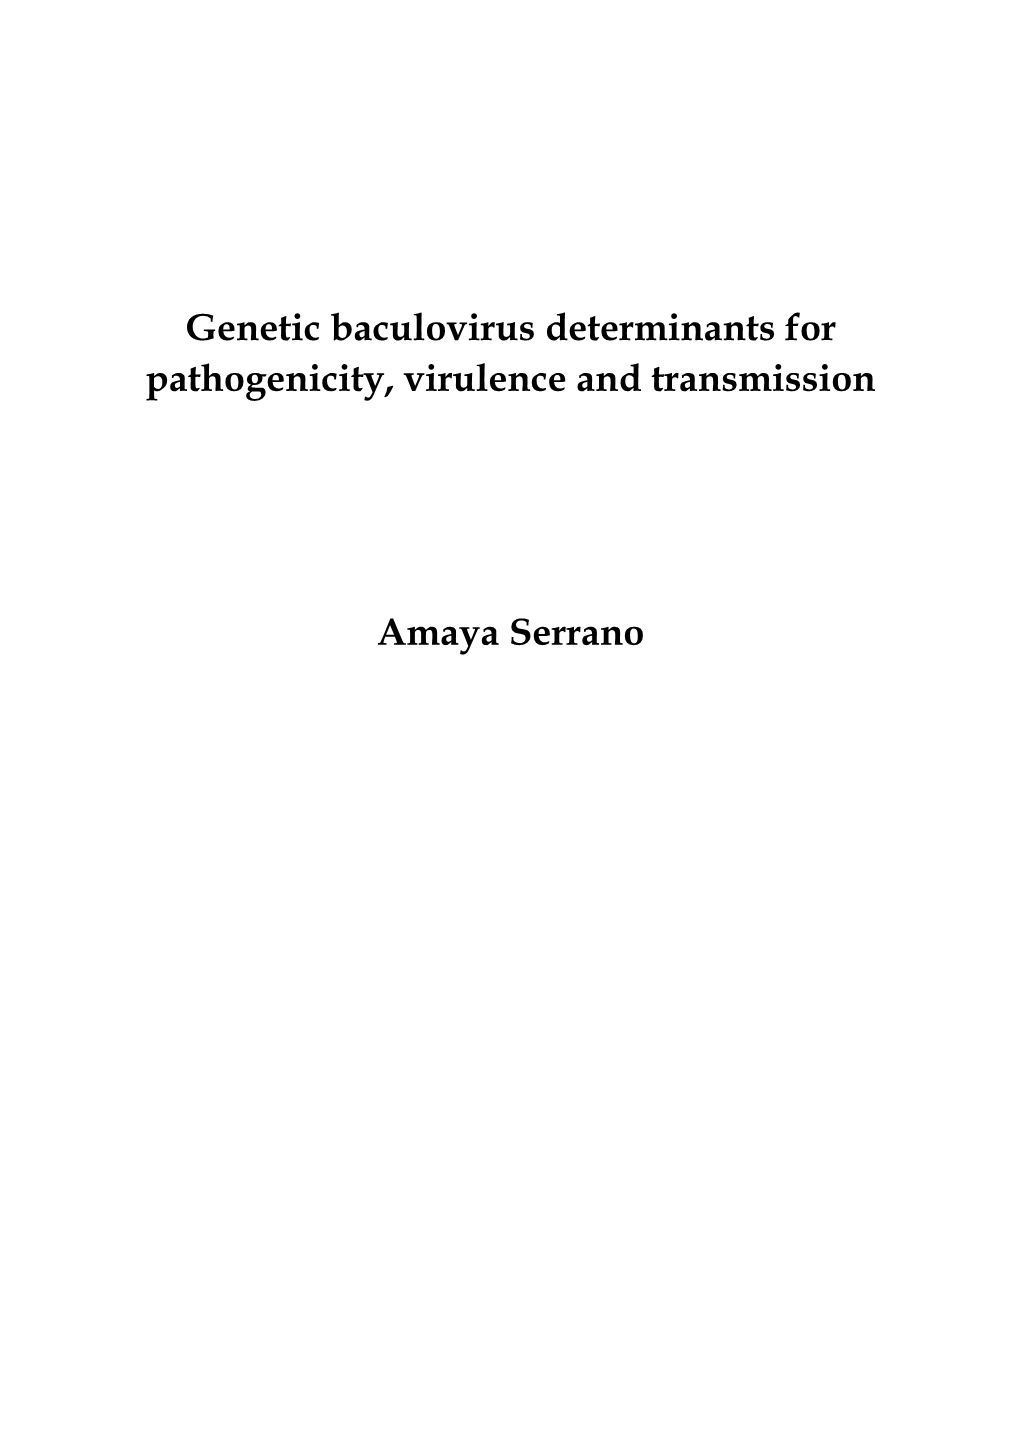 Genetic Baculovirus Determinants for Pathogenicity, Virulence and Transmission Amaya Serrano